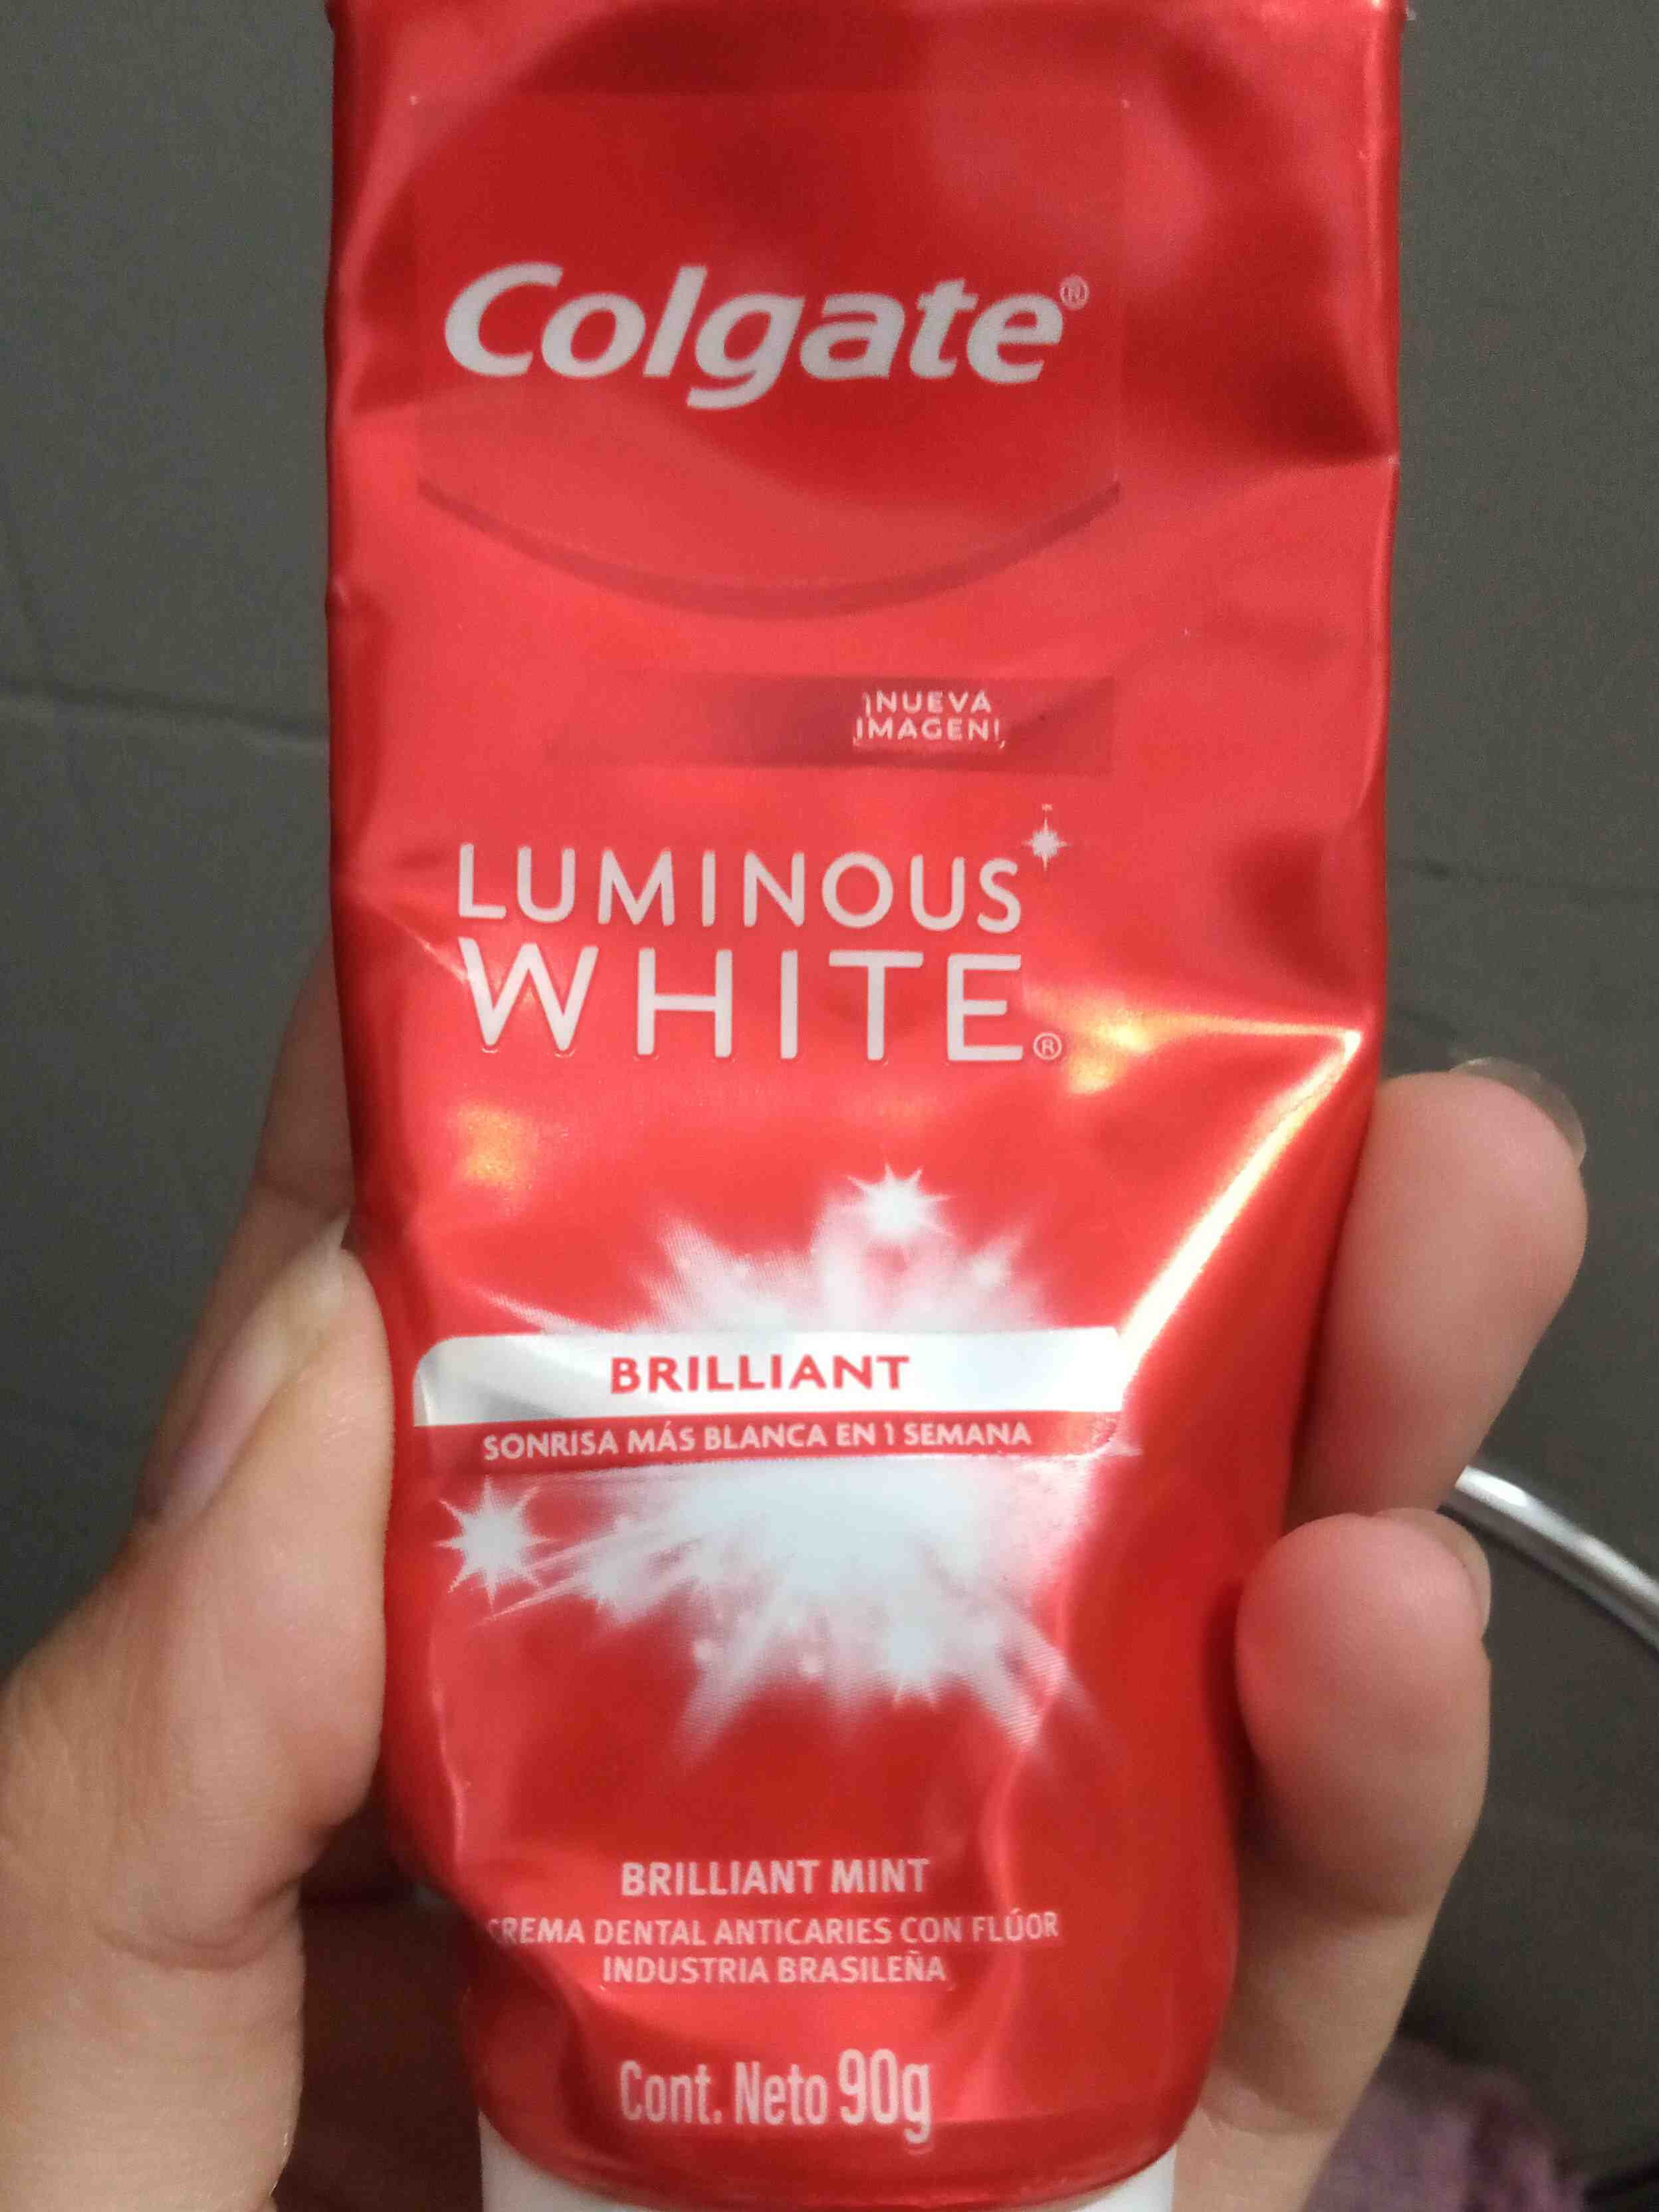 Luminous white - Produkt - en